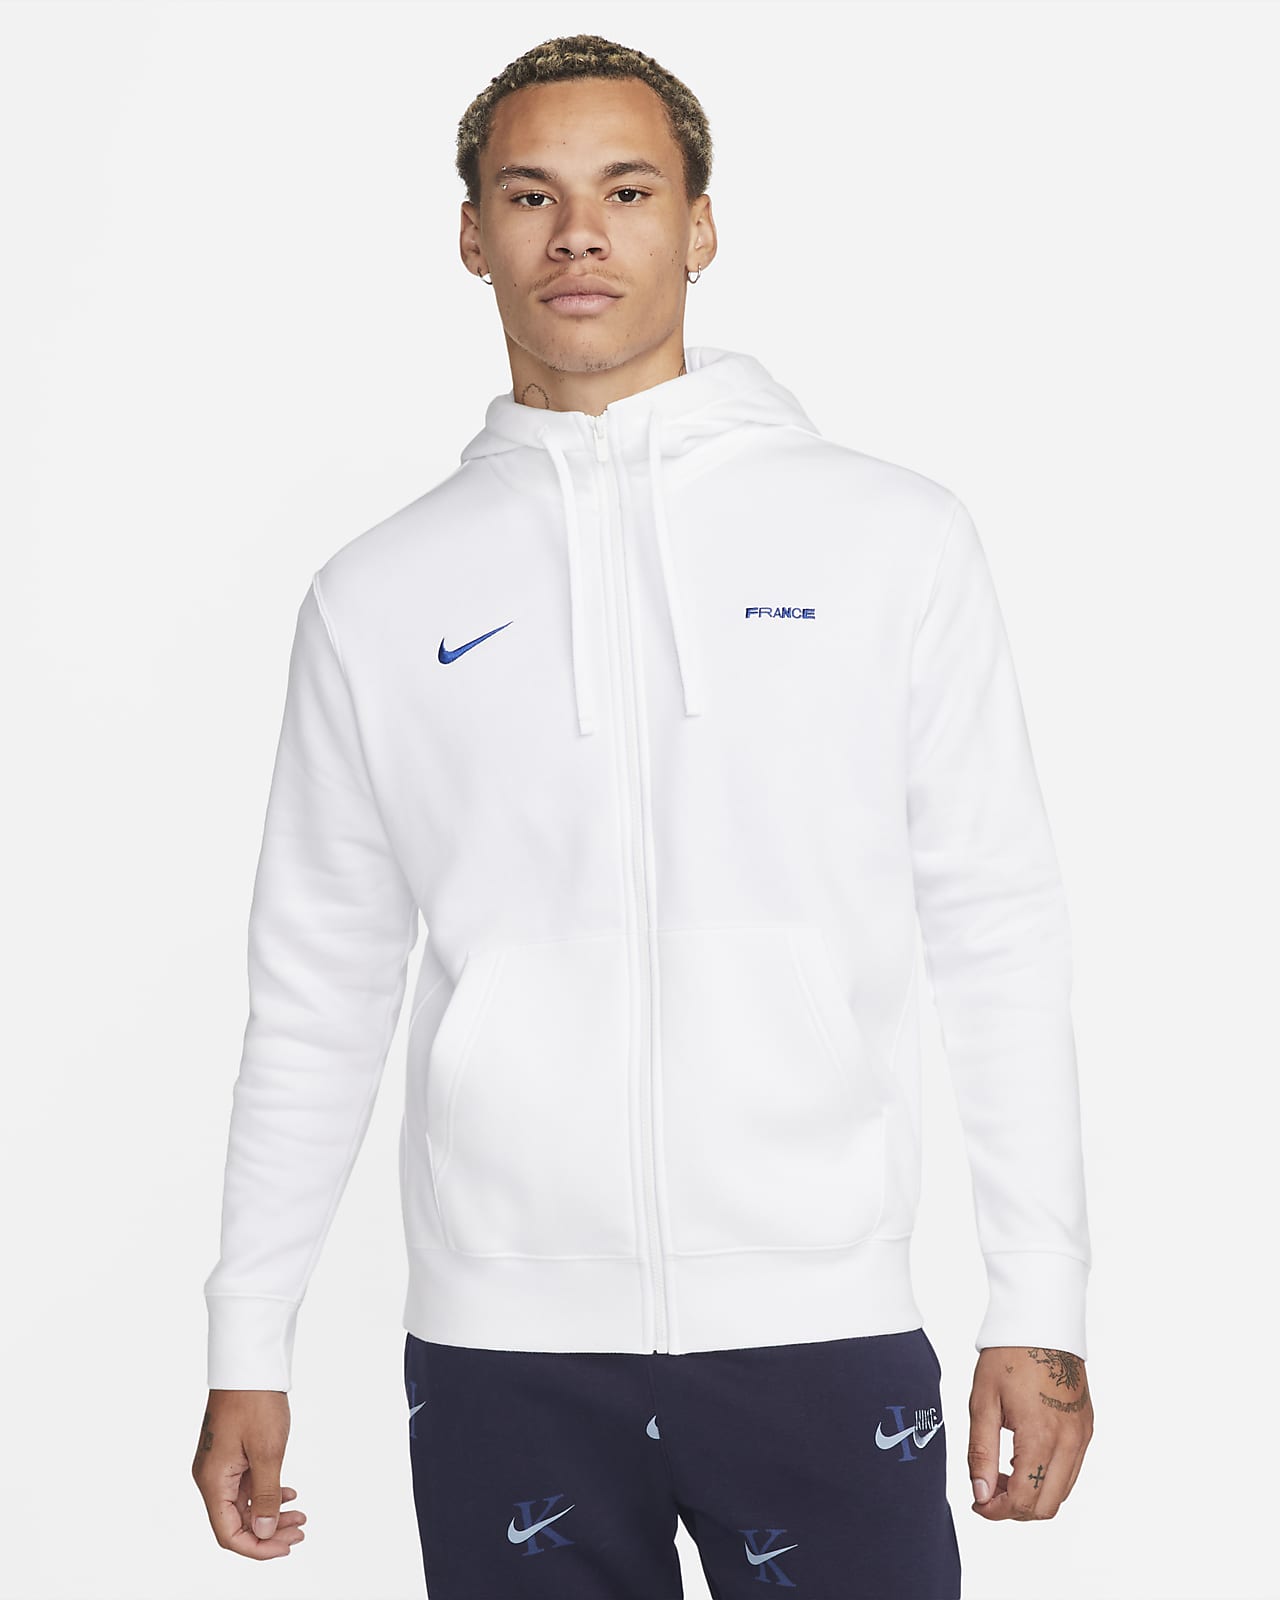 Sweat capuche Nike pour homme Club Fleece. Zip intégral type veste